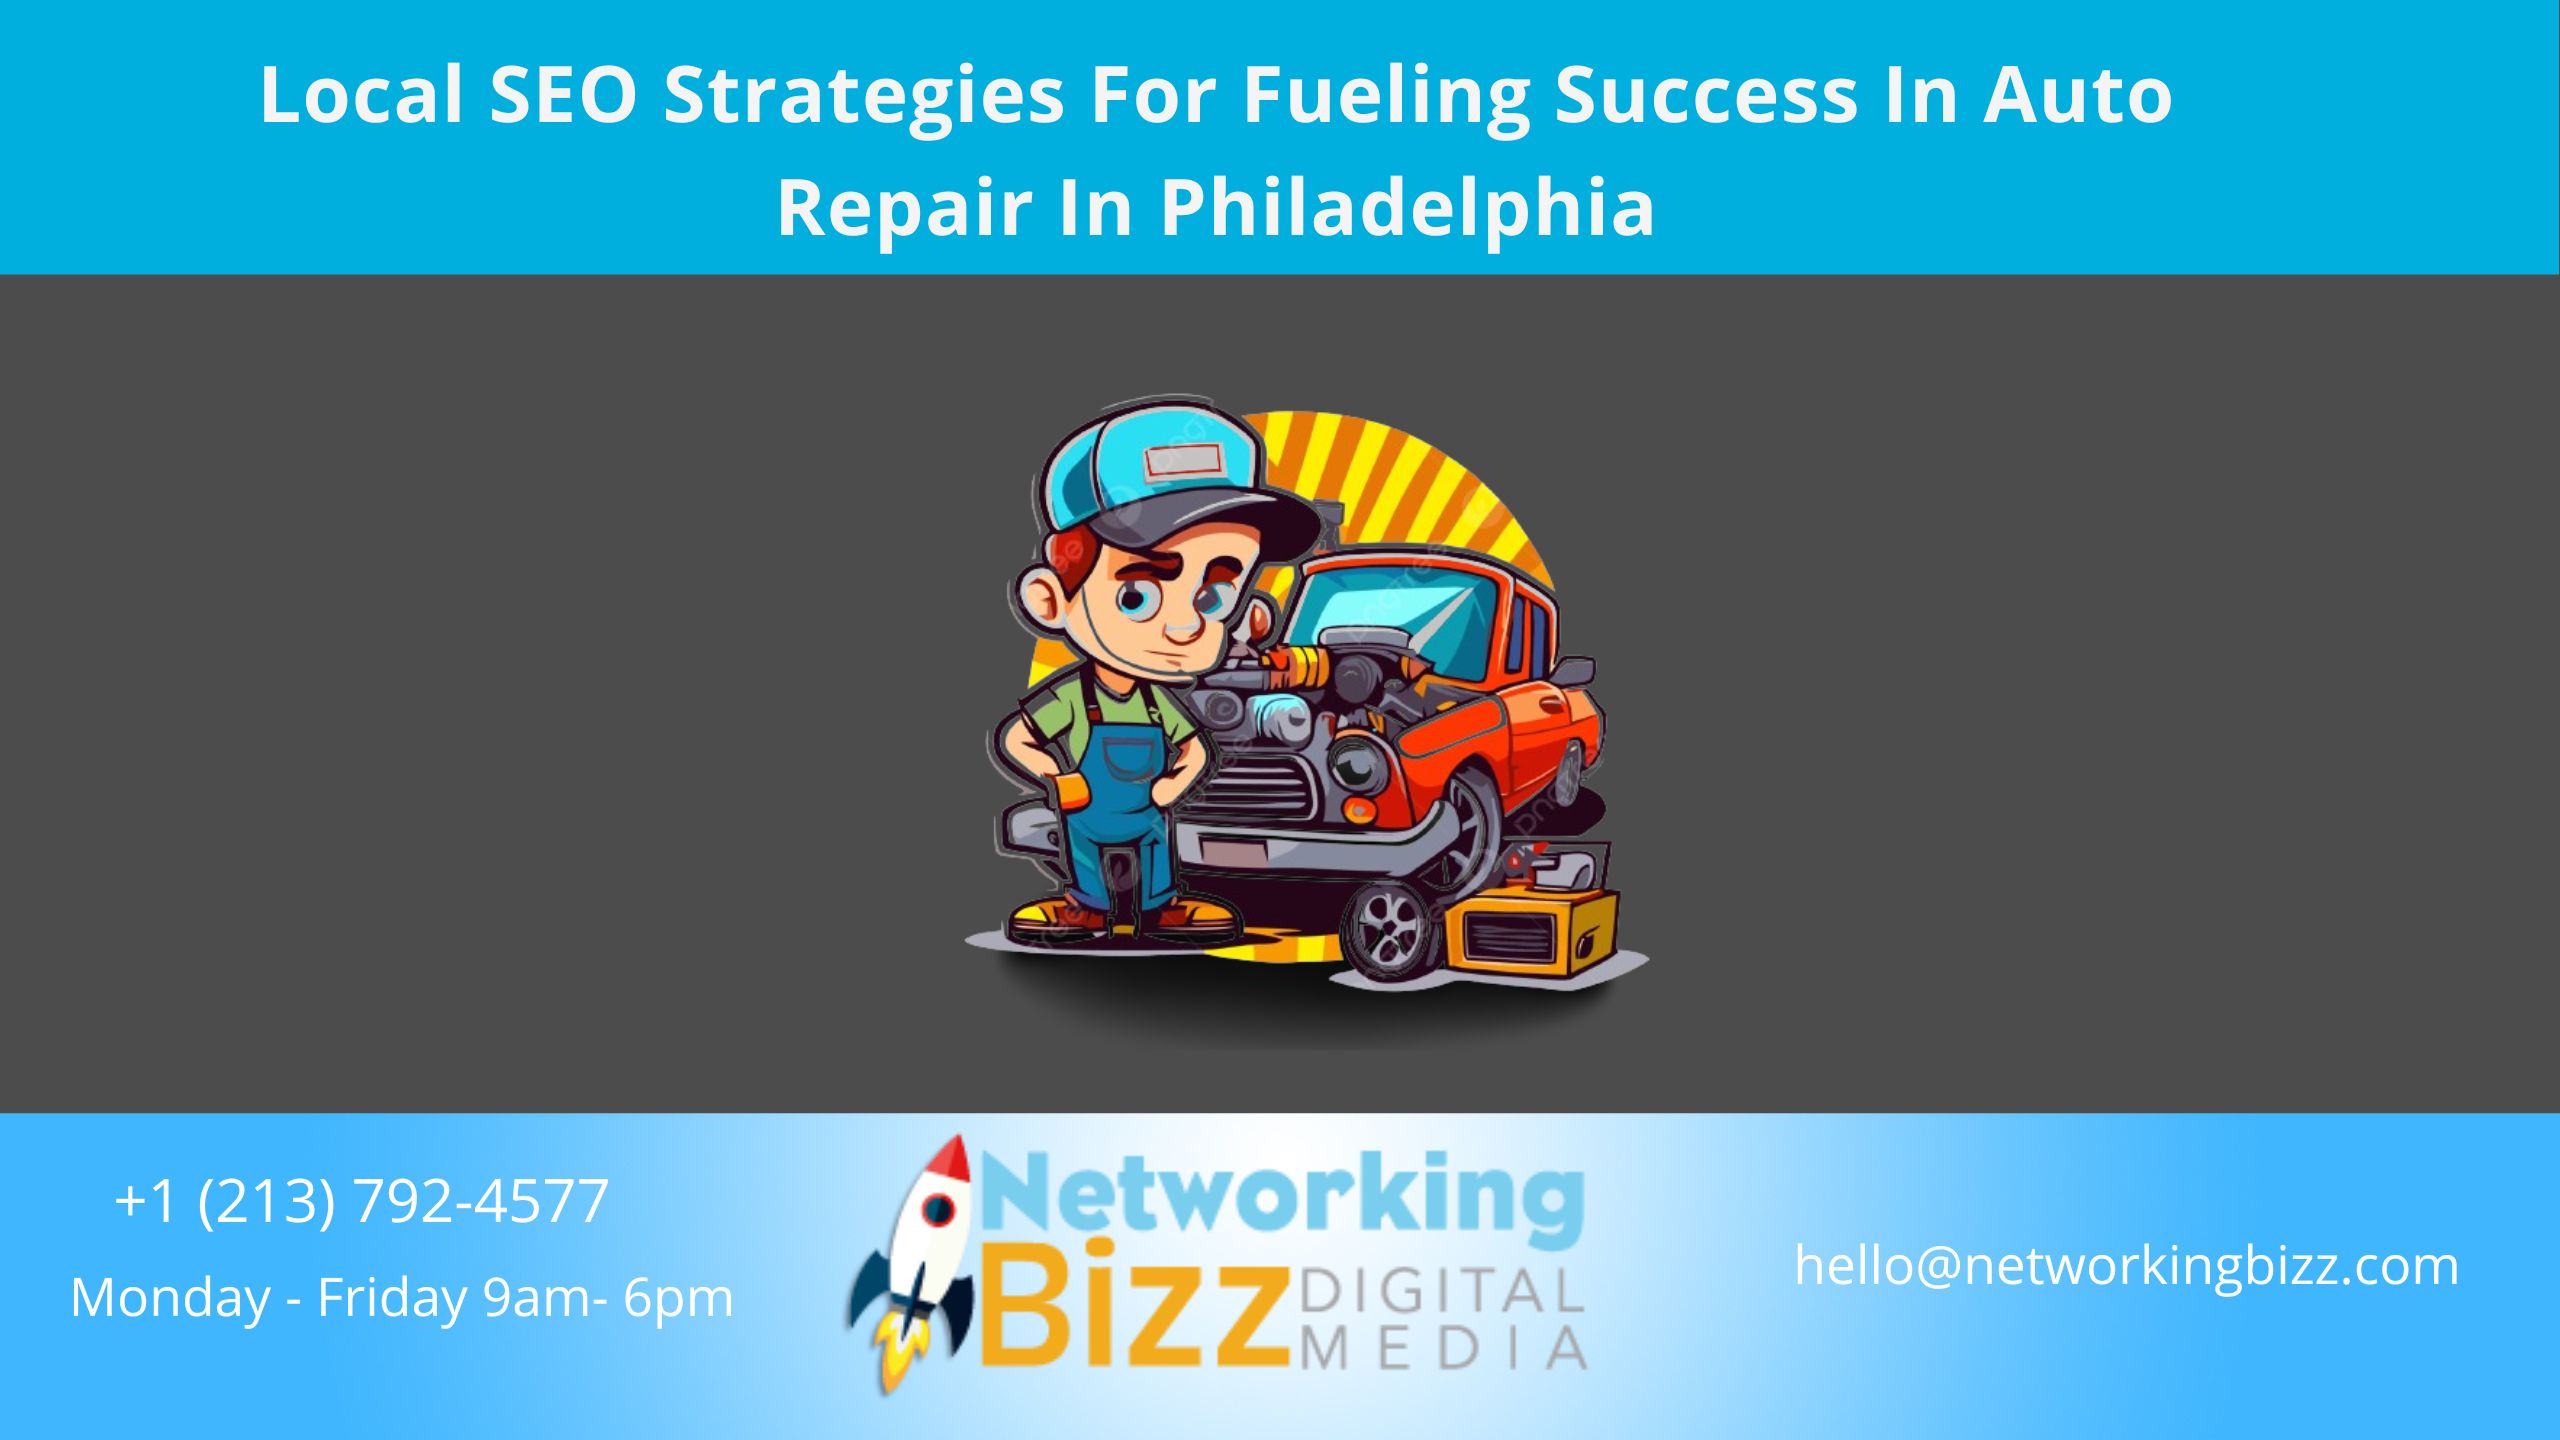 Local SEO Strategies For Fueling Success In Auto Repair In Philadelphia